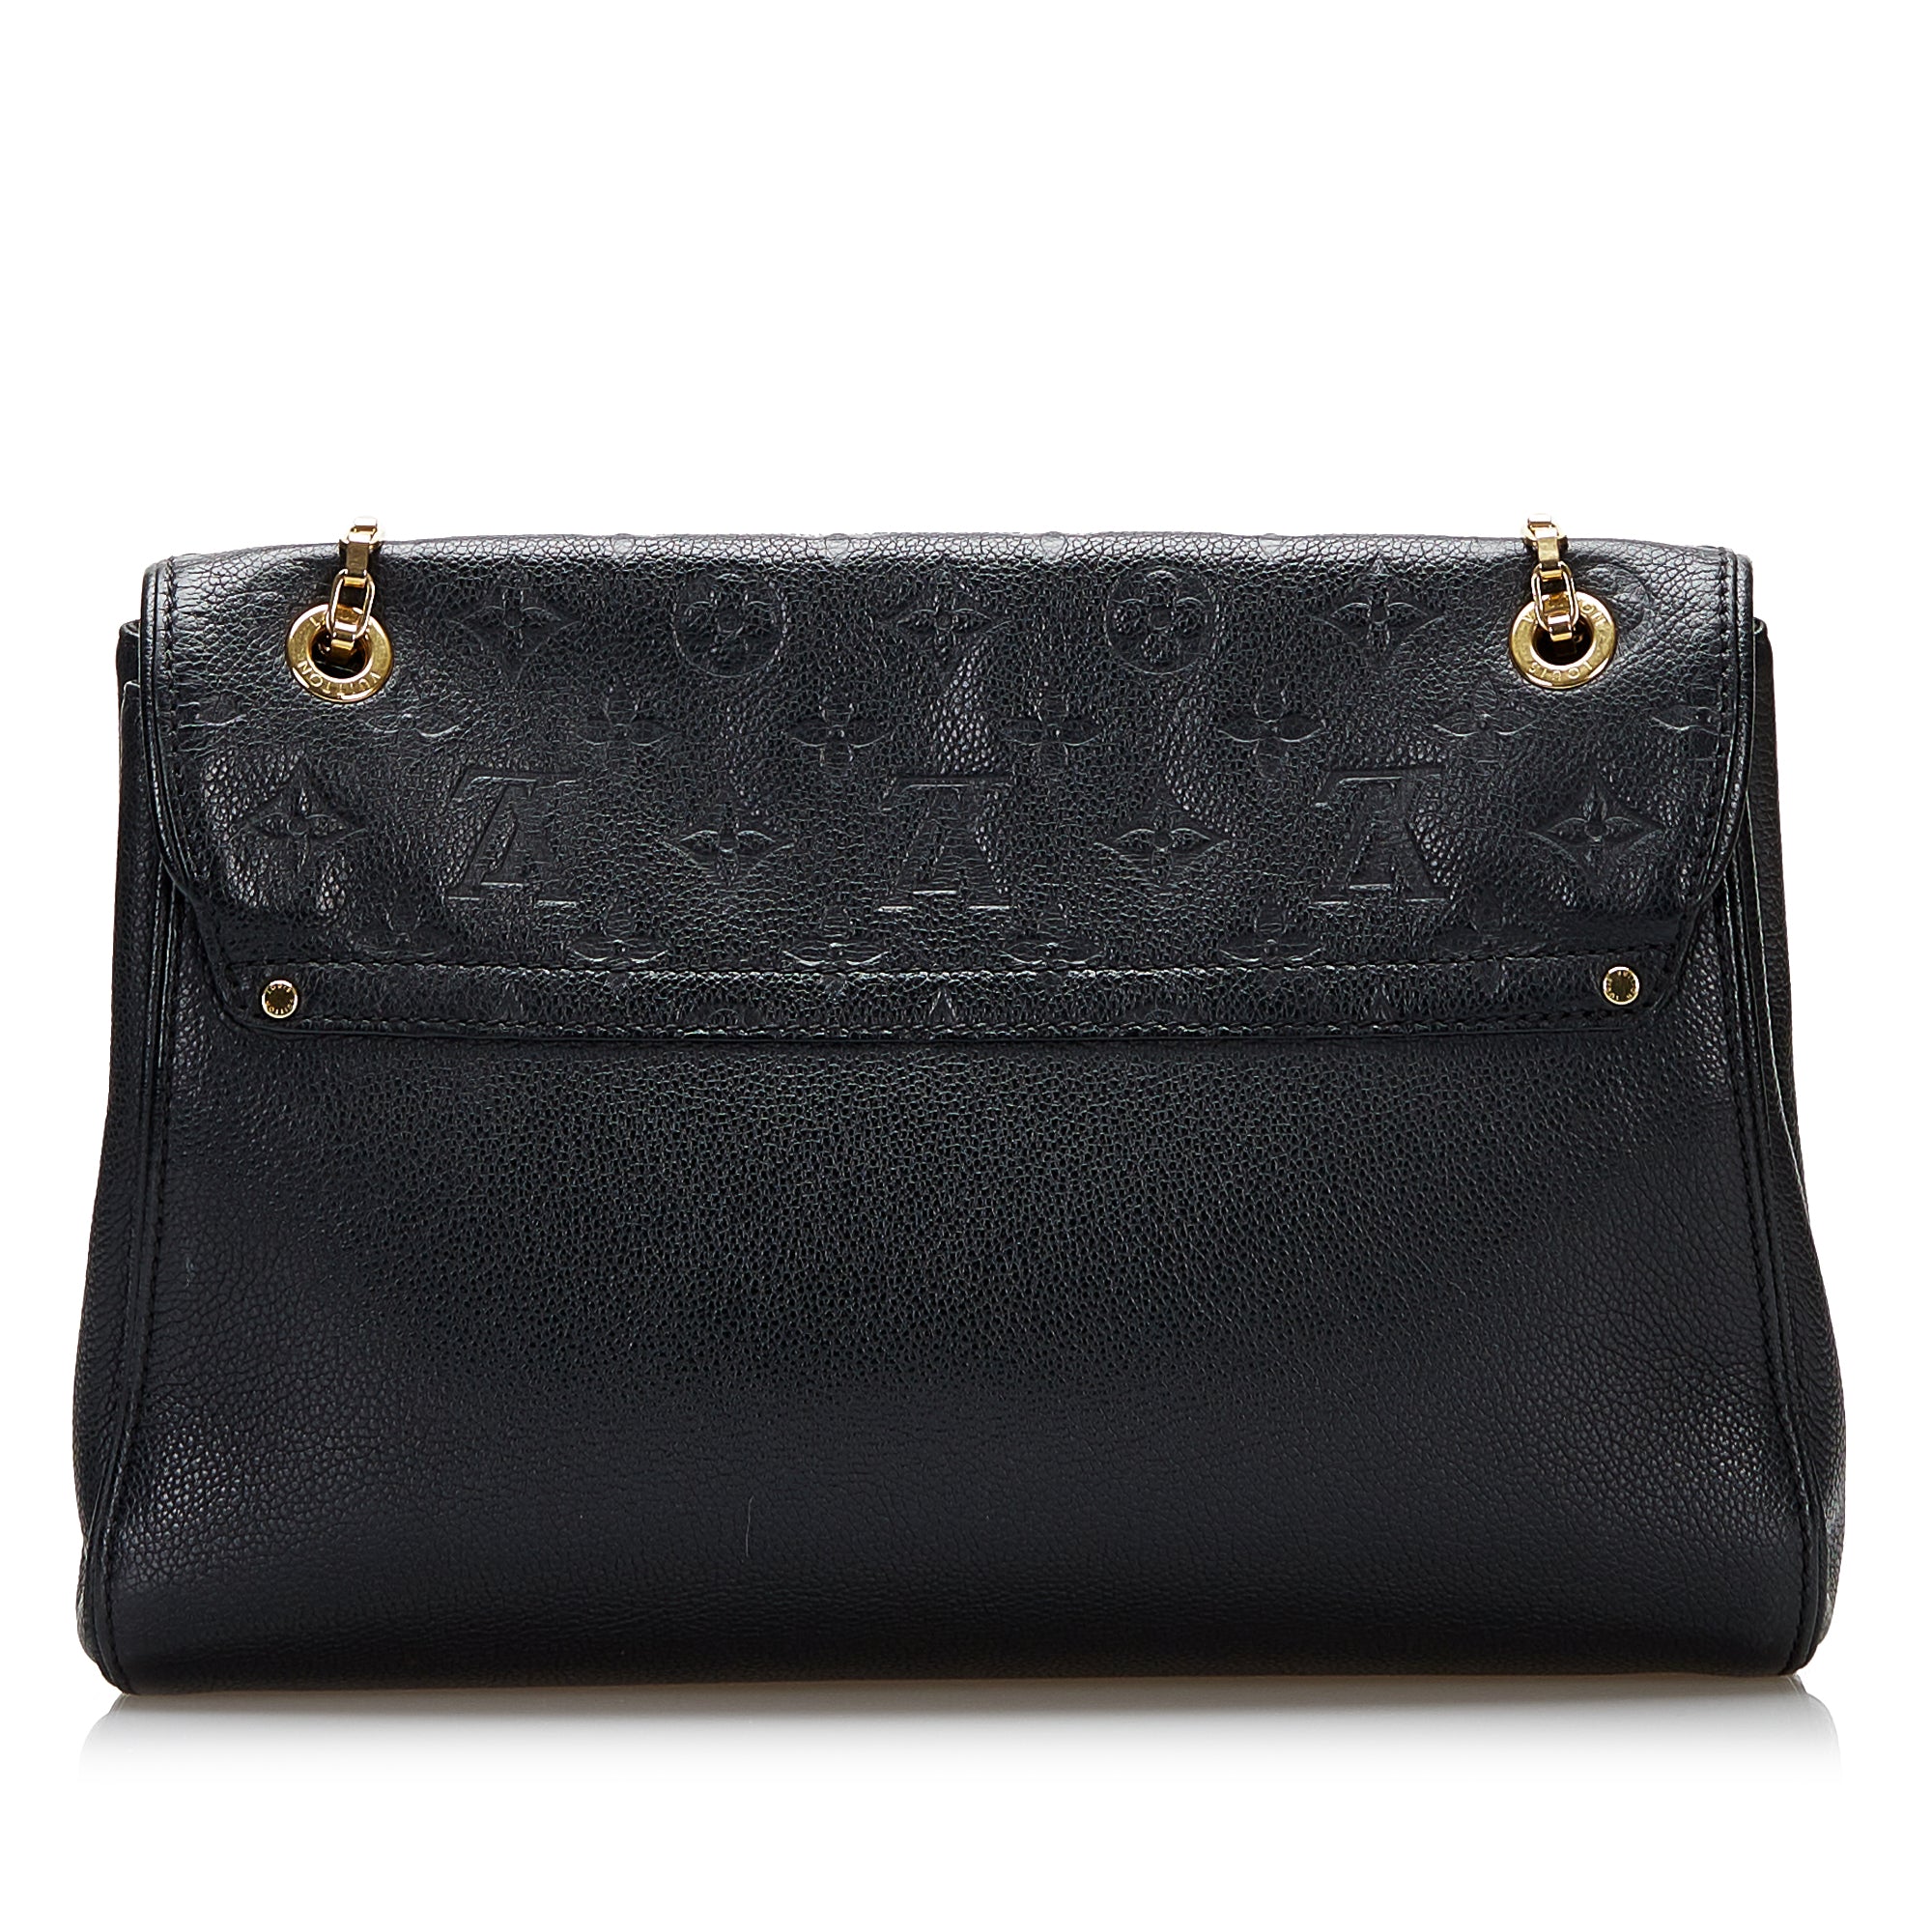 Authenticated Used Louis Vuitton Monogram Empreinte Saint Germain PM M48949  Women's Shoulder Bag Cerise 